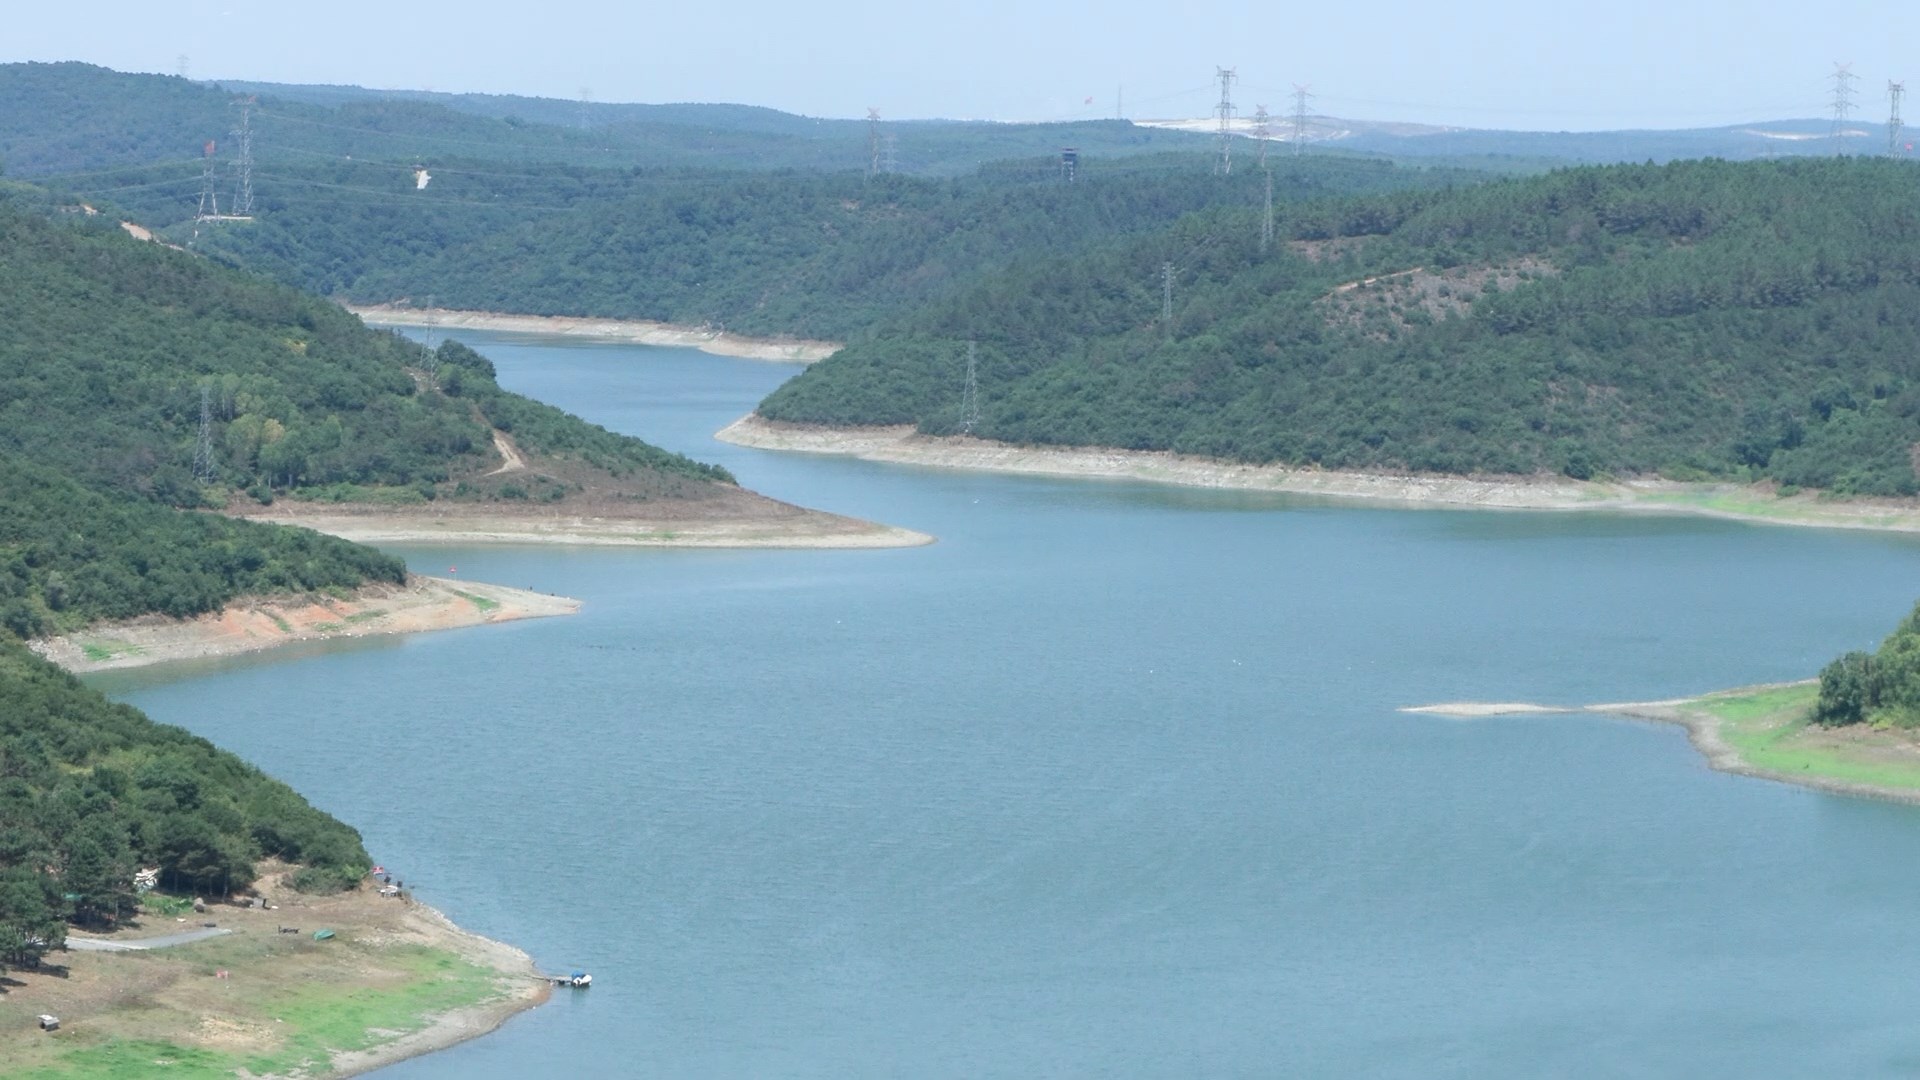 DSİ Genel Müdürü Balta: Yıl sonuna kadar içme suyu sorunu